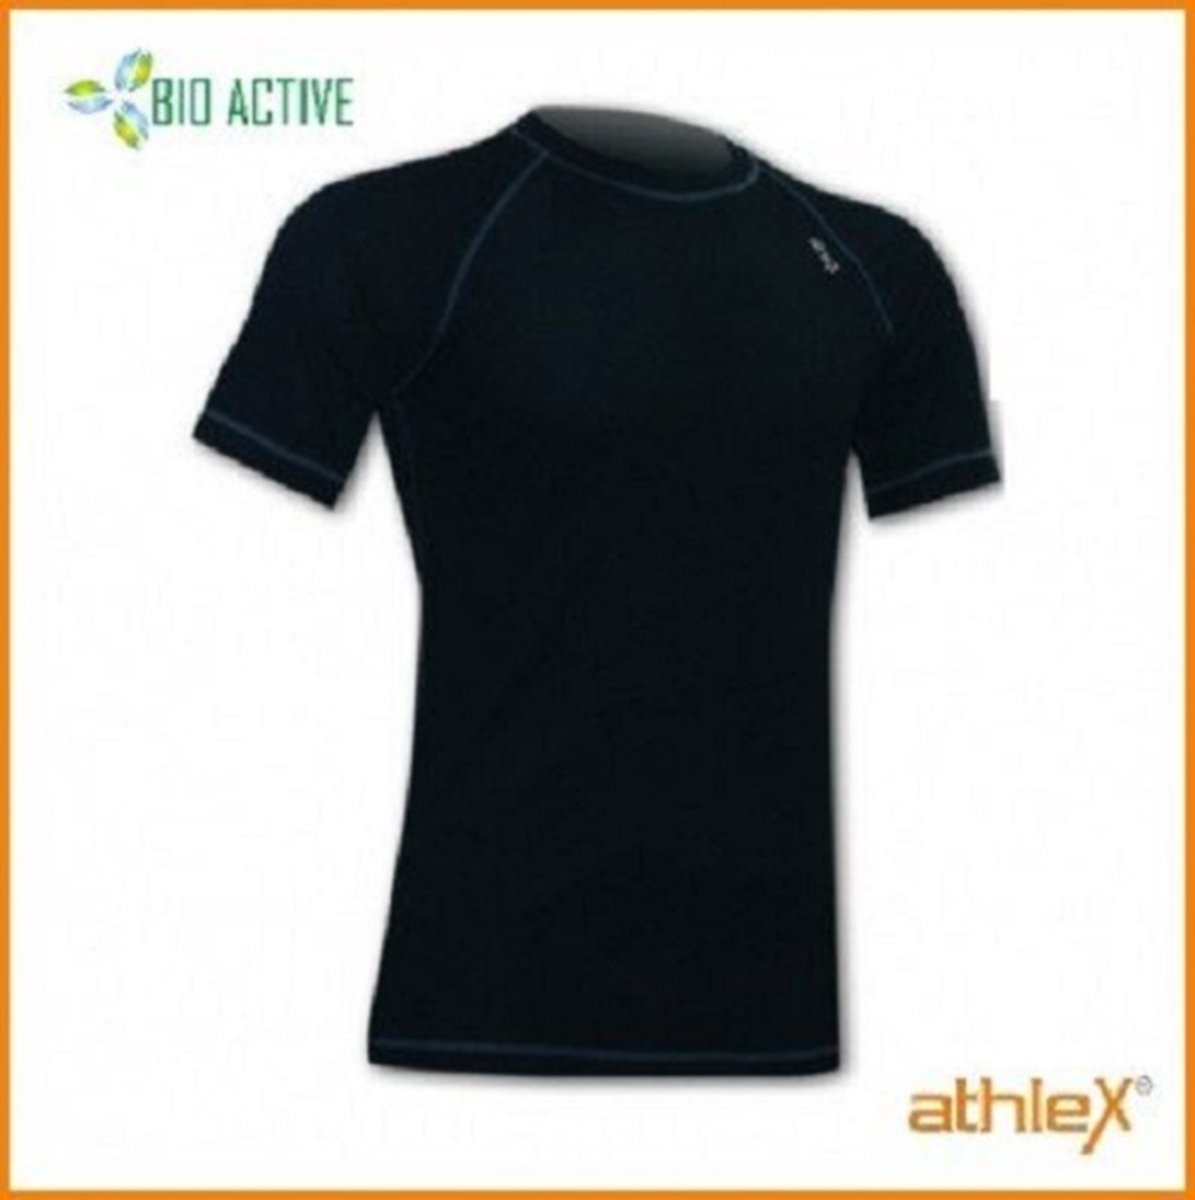 Athlex Bio Active Shirt korte mouw L Zwart